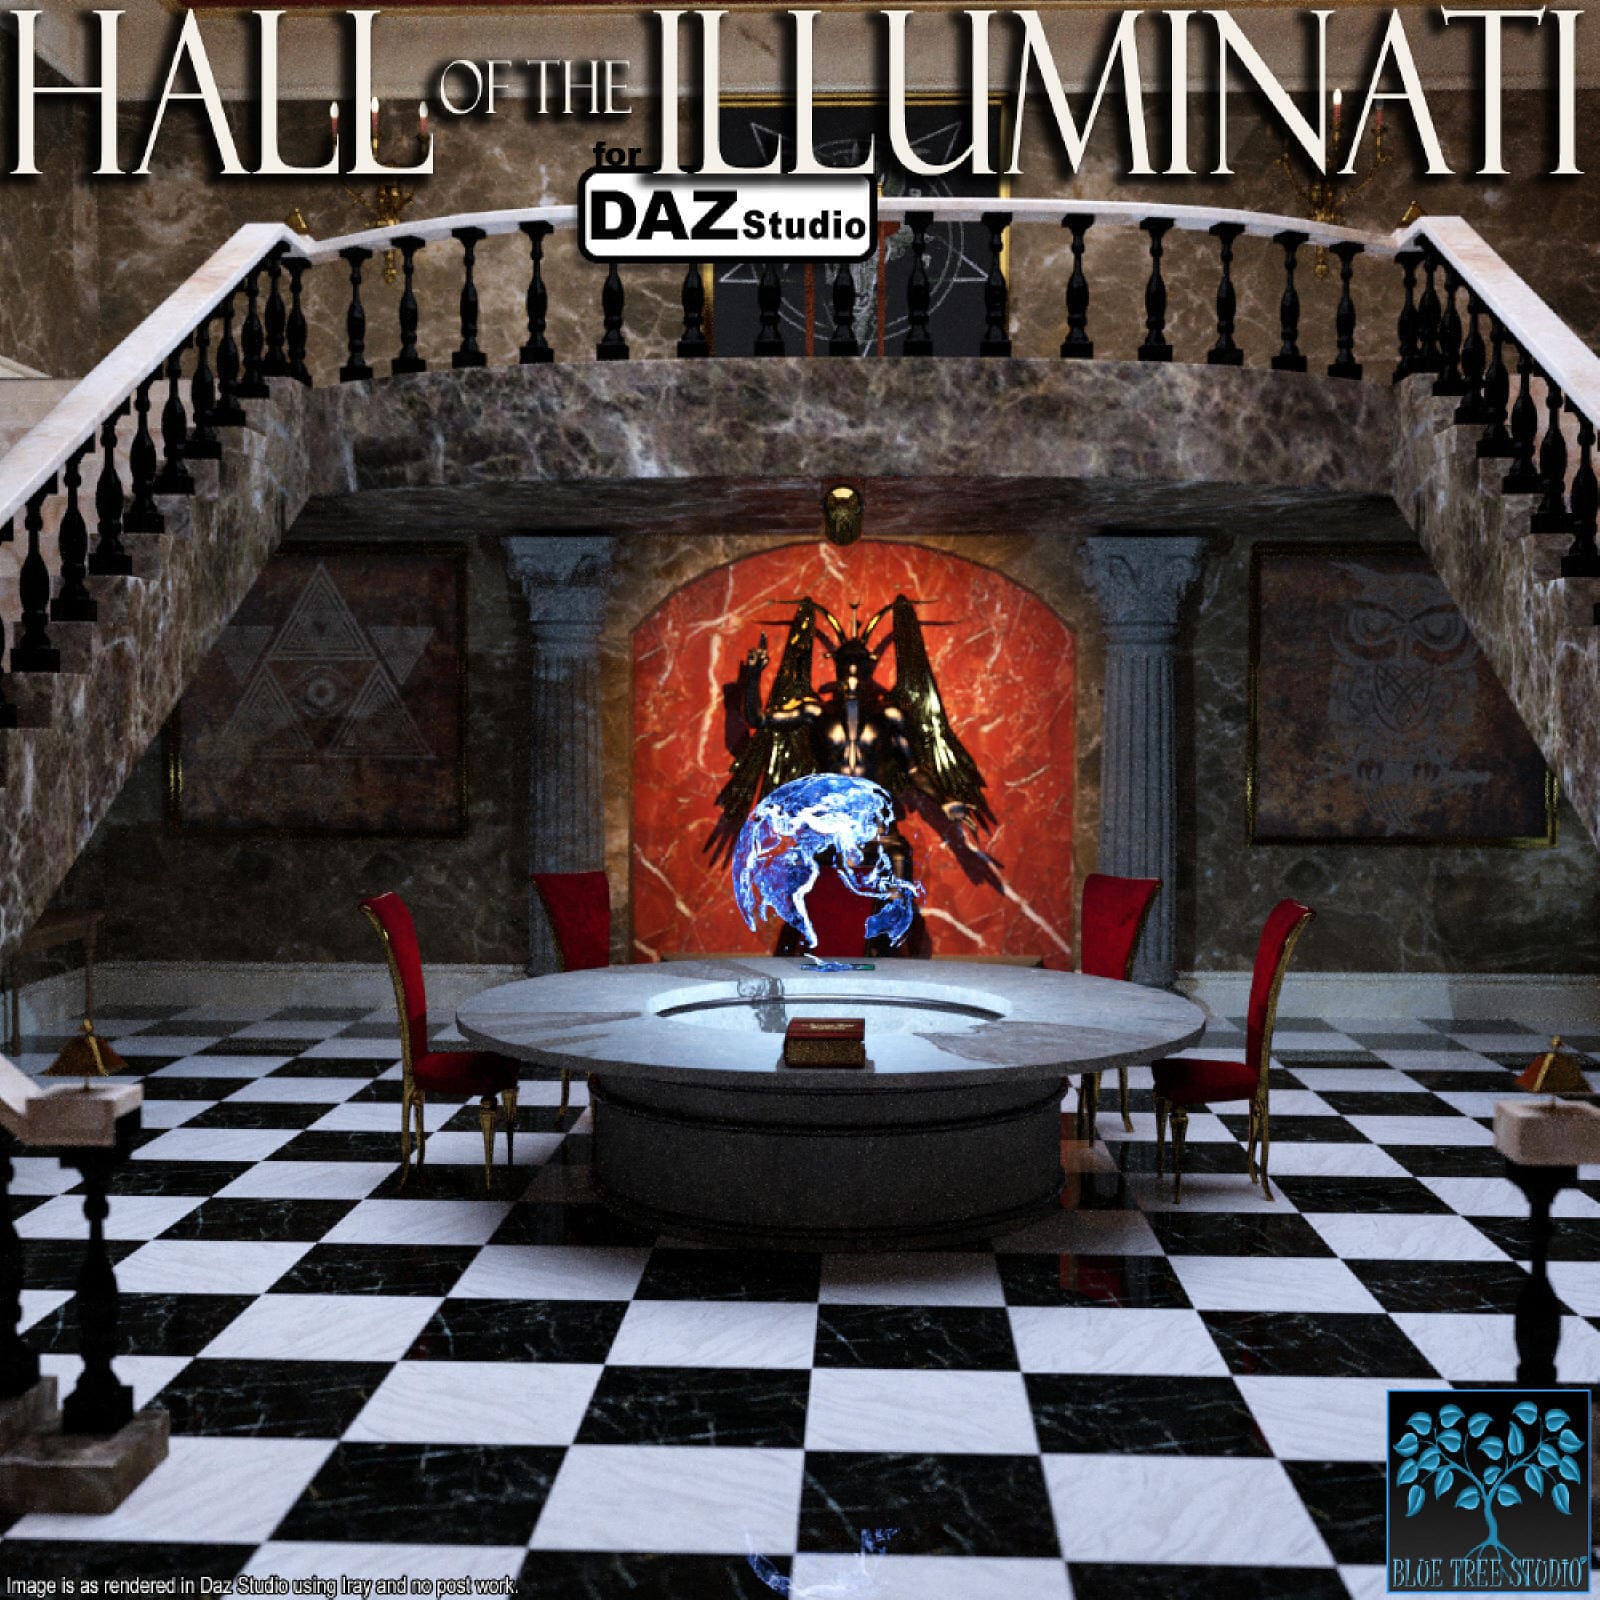 Hall of the Illuminati for Daz_DAZ3DDL